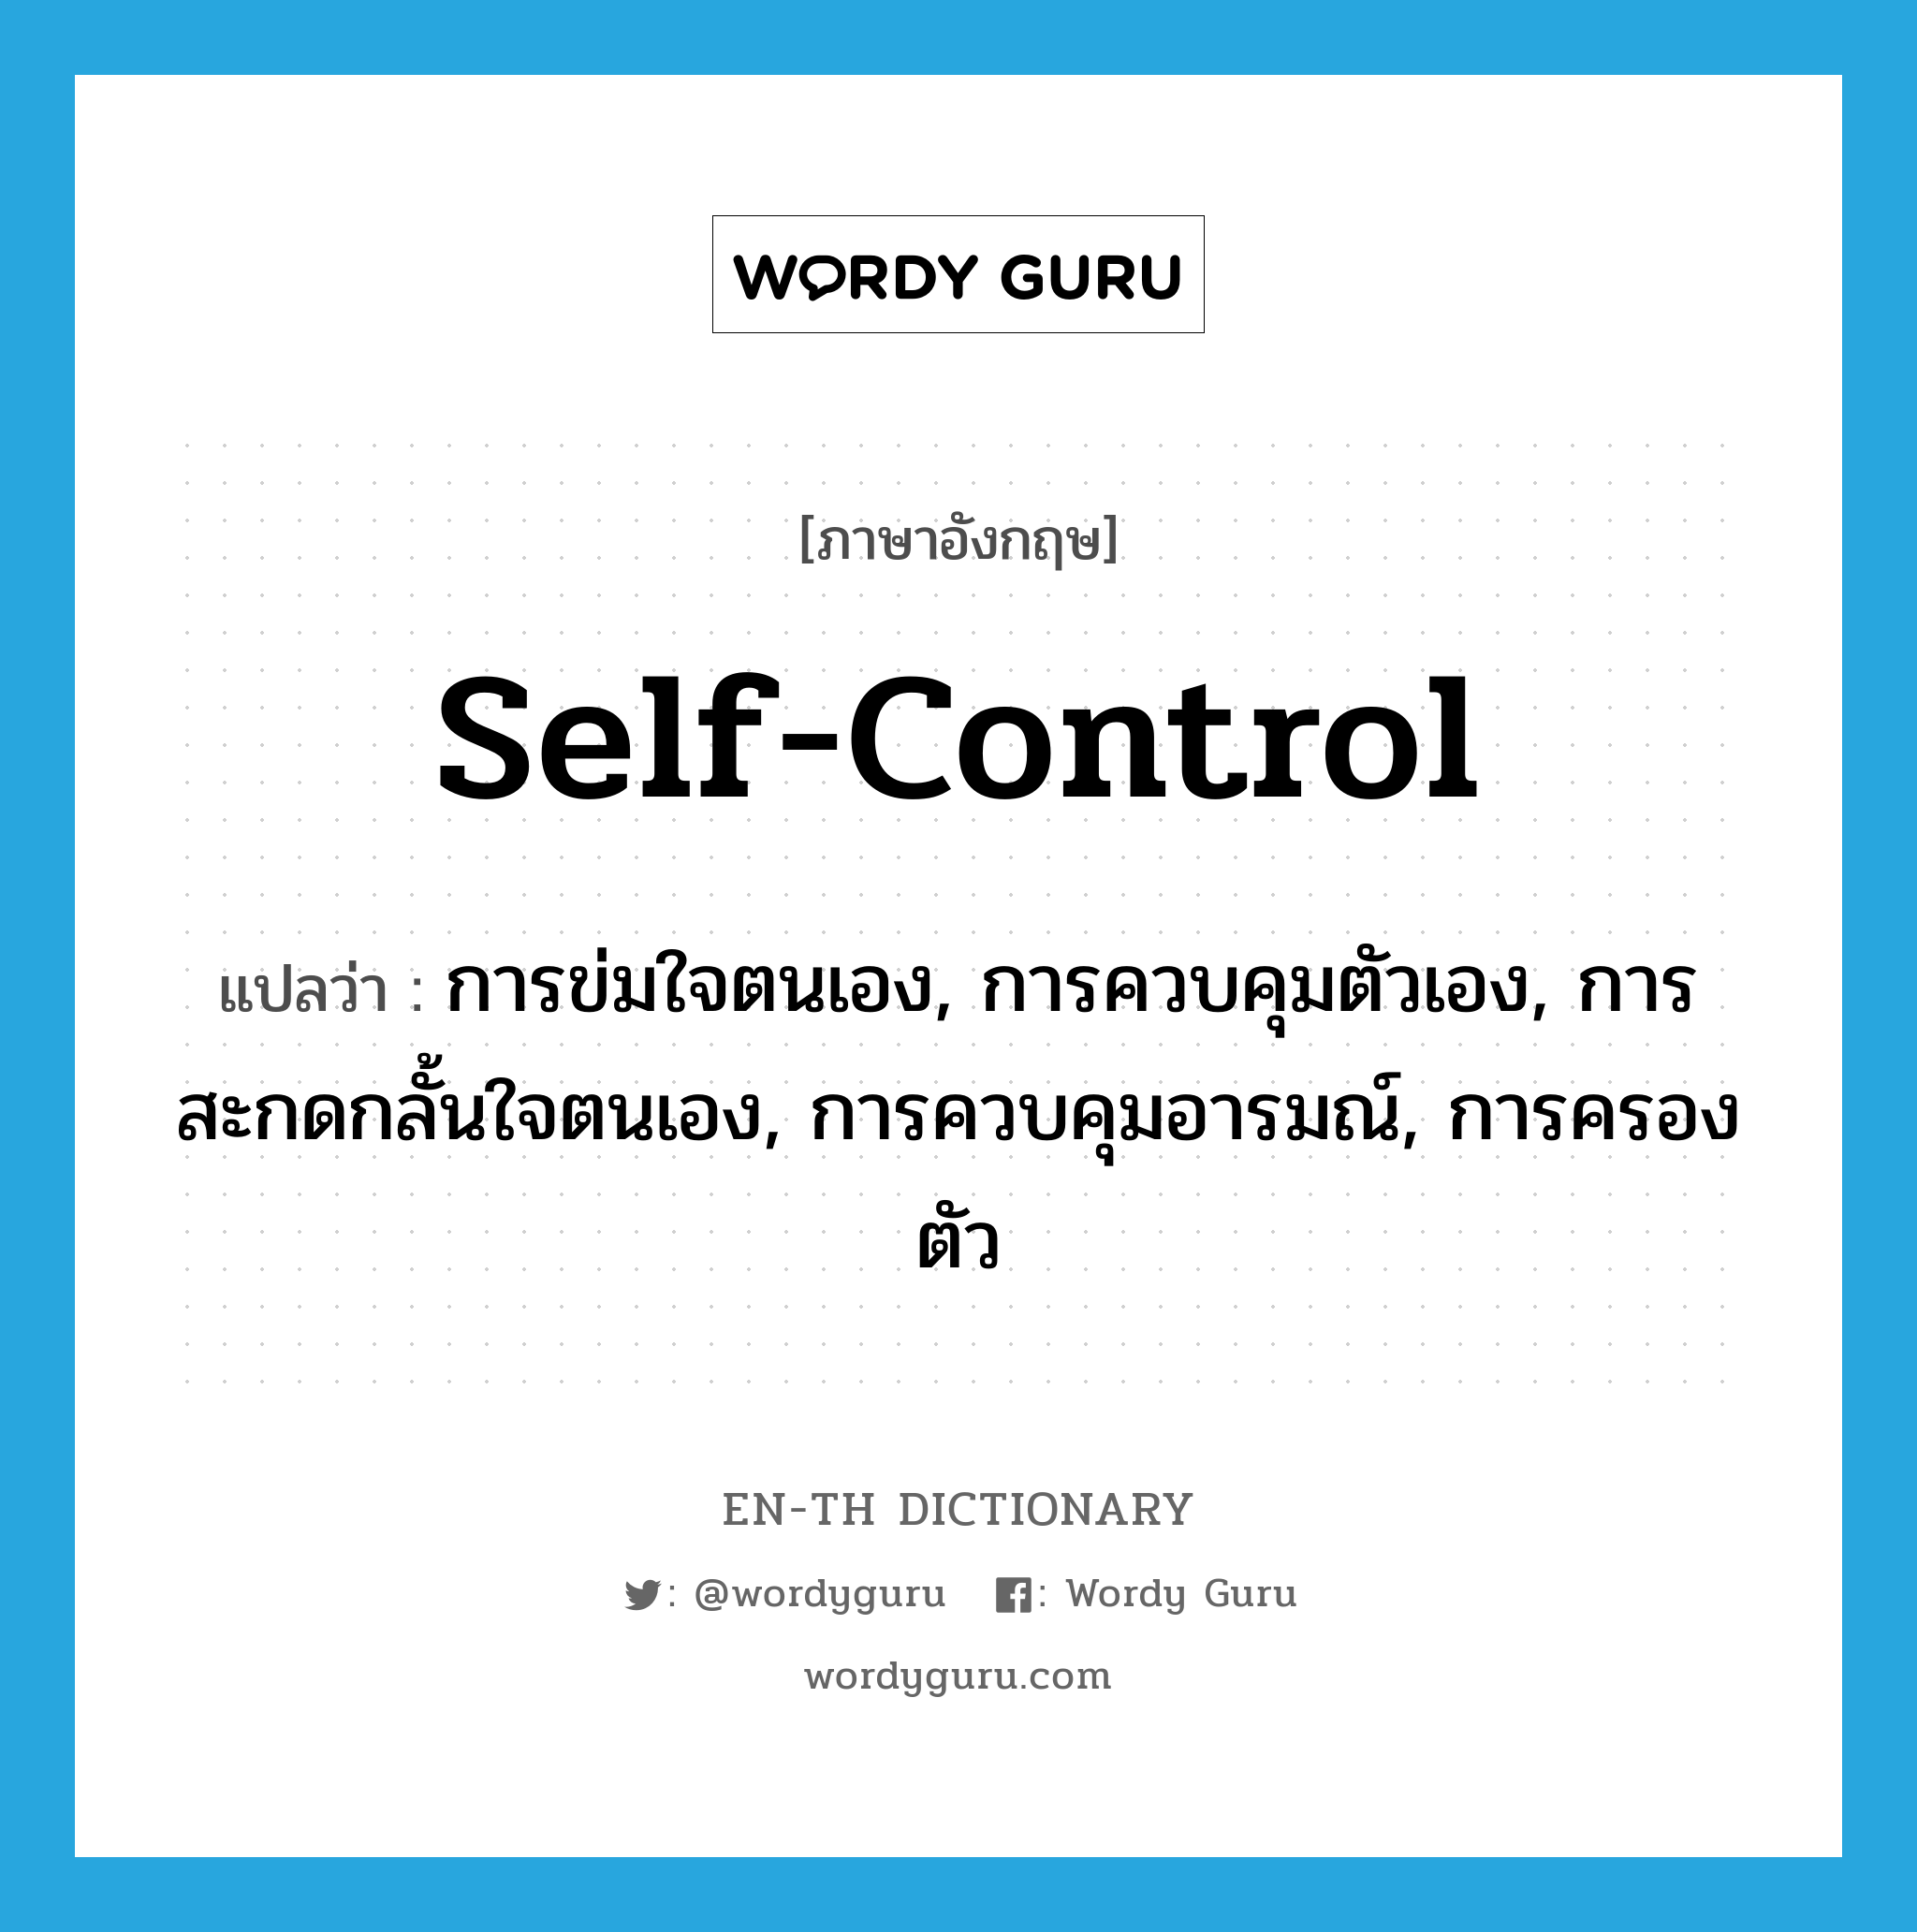 self-control แปลว่า?, คำศัพท์ภาษาอังกฤษ self-control แปลว่า การข่มใจตนเอง, การควบคุมตัวเอง, การสะกดกลั้นใจตนเอง, การควบคุมอารมณ์, การครองตัว ประเภท N หมวด N